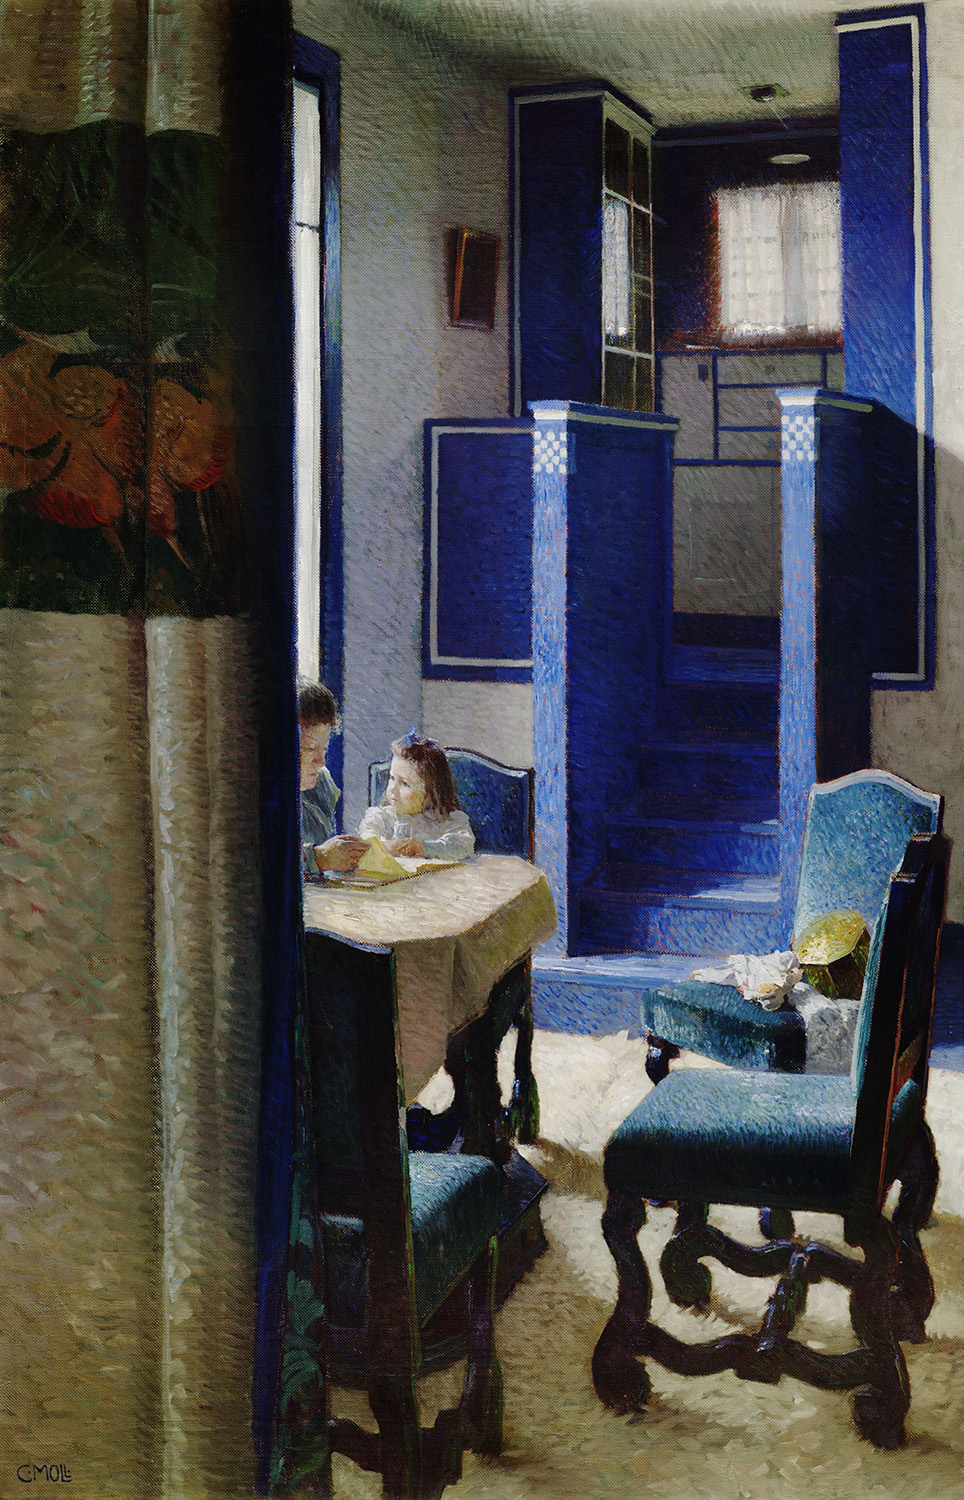 Einblick in einen Salon, zwei Kinder sitzend an einem Tisch, im Hintergrund eine blaue Stiege